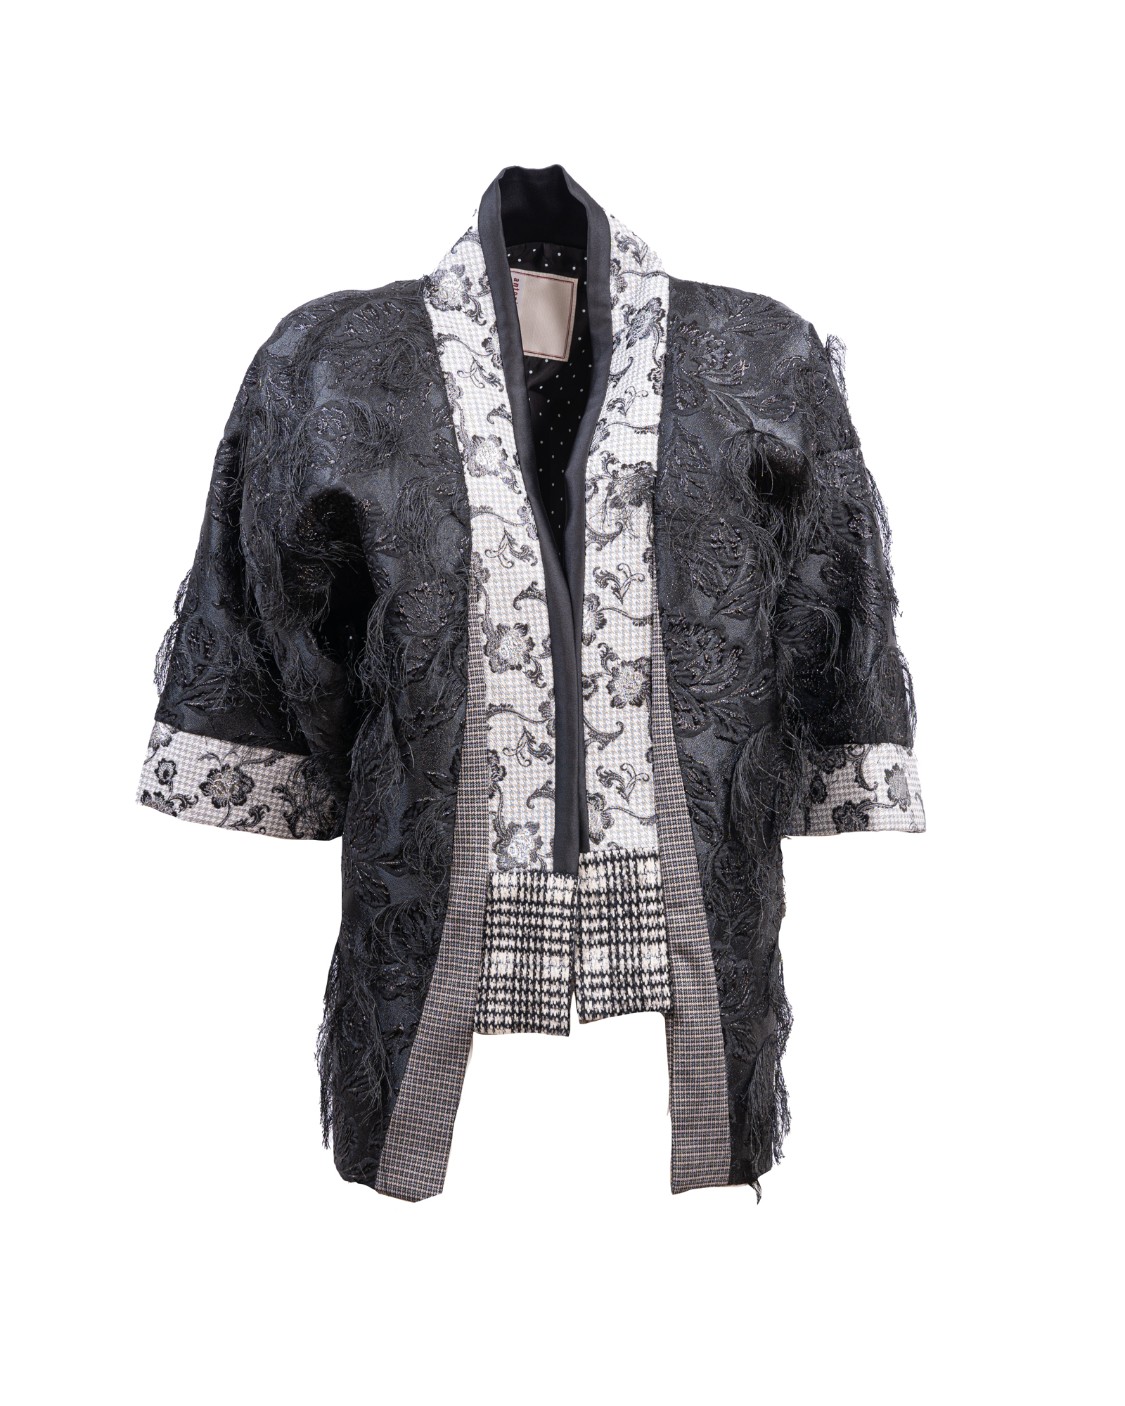 shop ANTONIO MARRAS  Cappa: Antonio Marras giacca stile kimono.
Maniche a 3/4.
Fantasia.
Vestibilità regolare.
Composizione: 95% Poliammide 5% Elastan.
Fabbricato in Italia.. GOGOL LB6026 D96-999 number 5848363